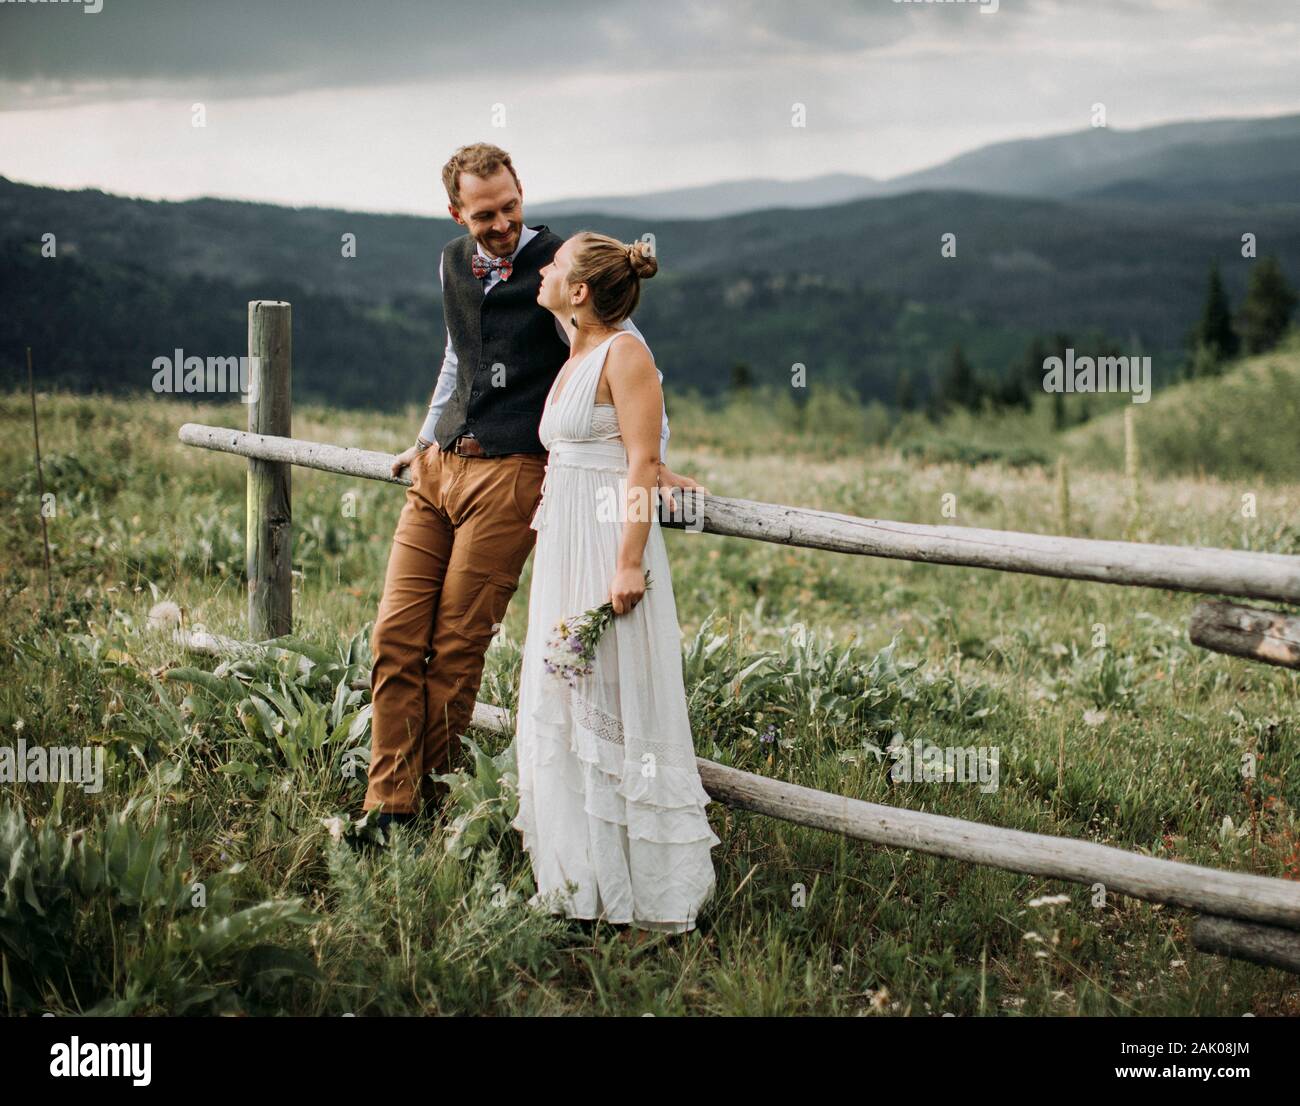 Frisch vermählte sehen sich an und lächeln, während sie sich auf einen Zaun lehnen, Wyoming Stockfoto